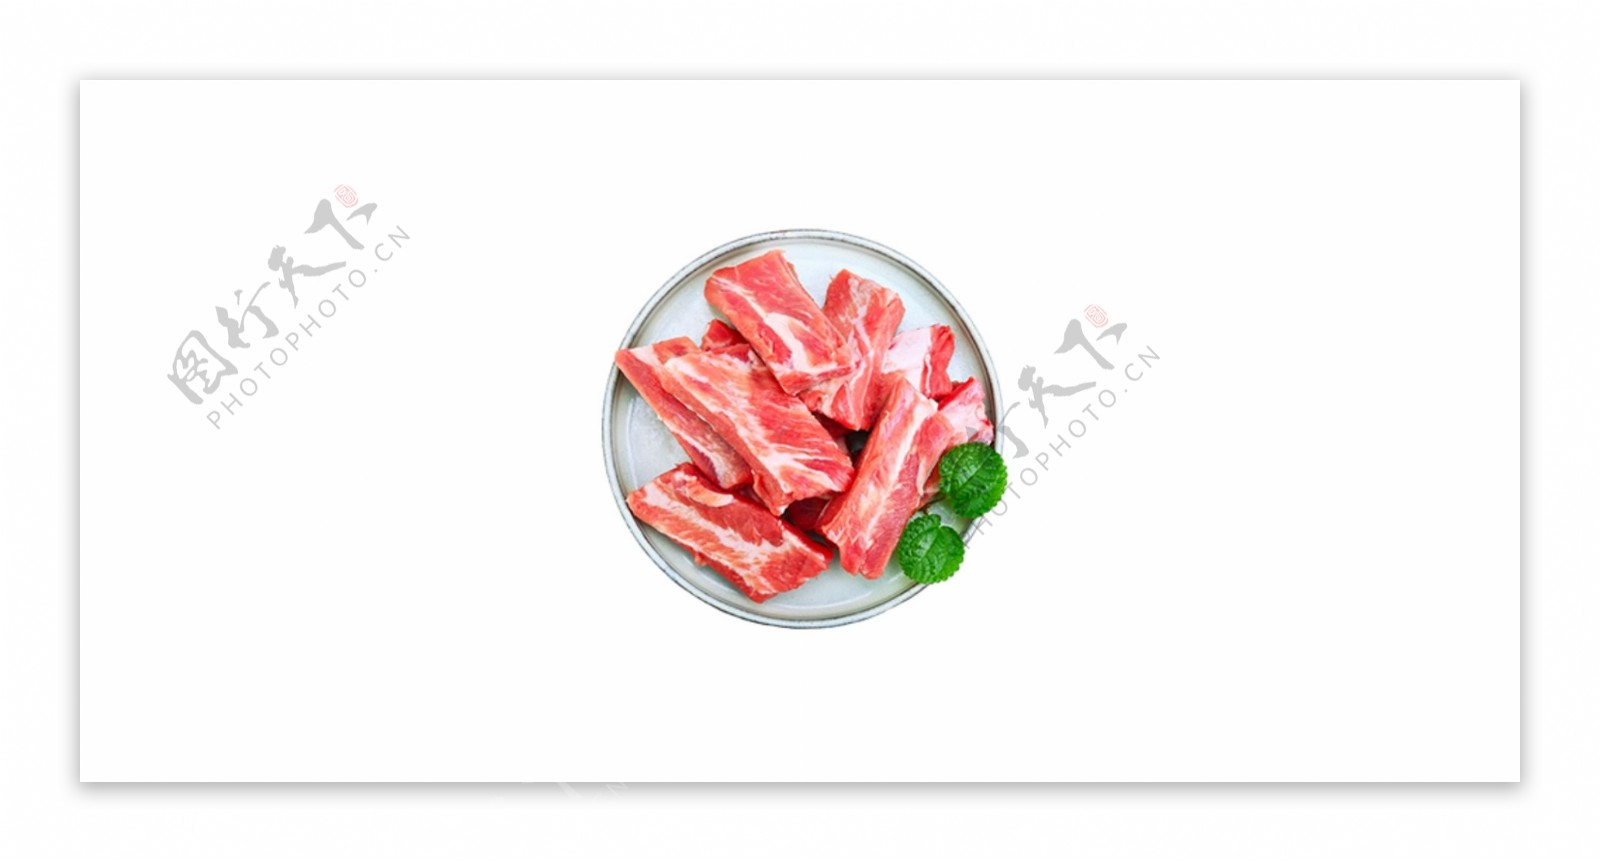 一盘食物猪肉肉食餐饮俯视图美味